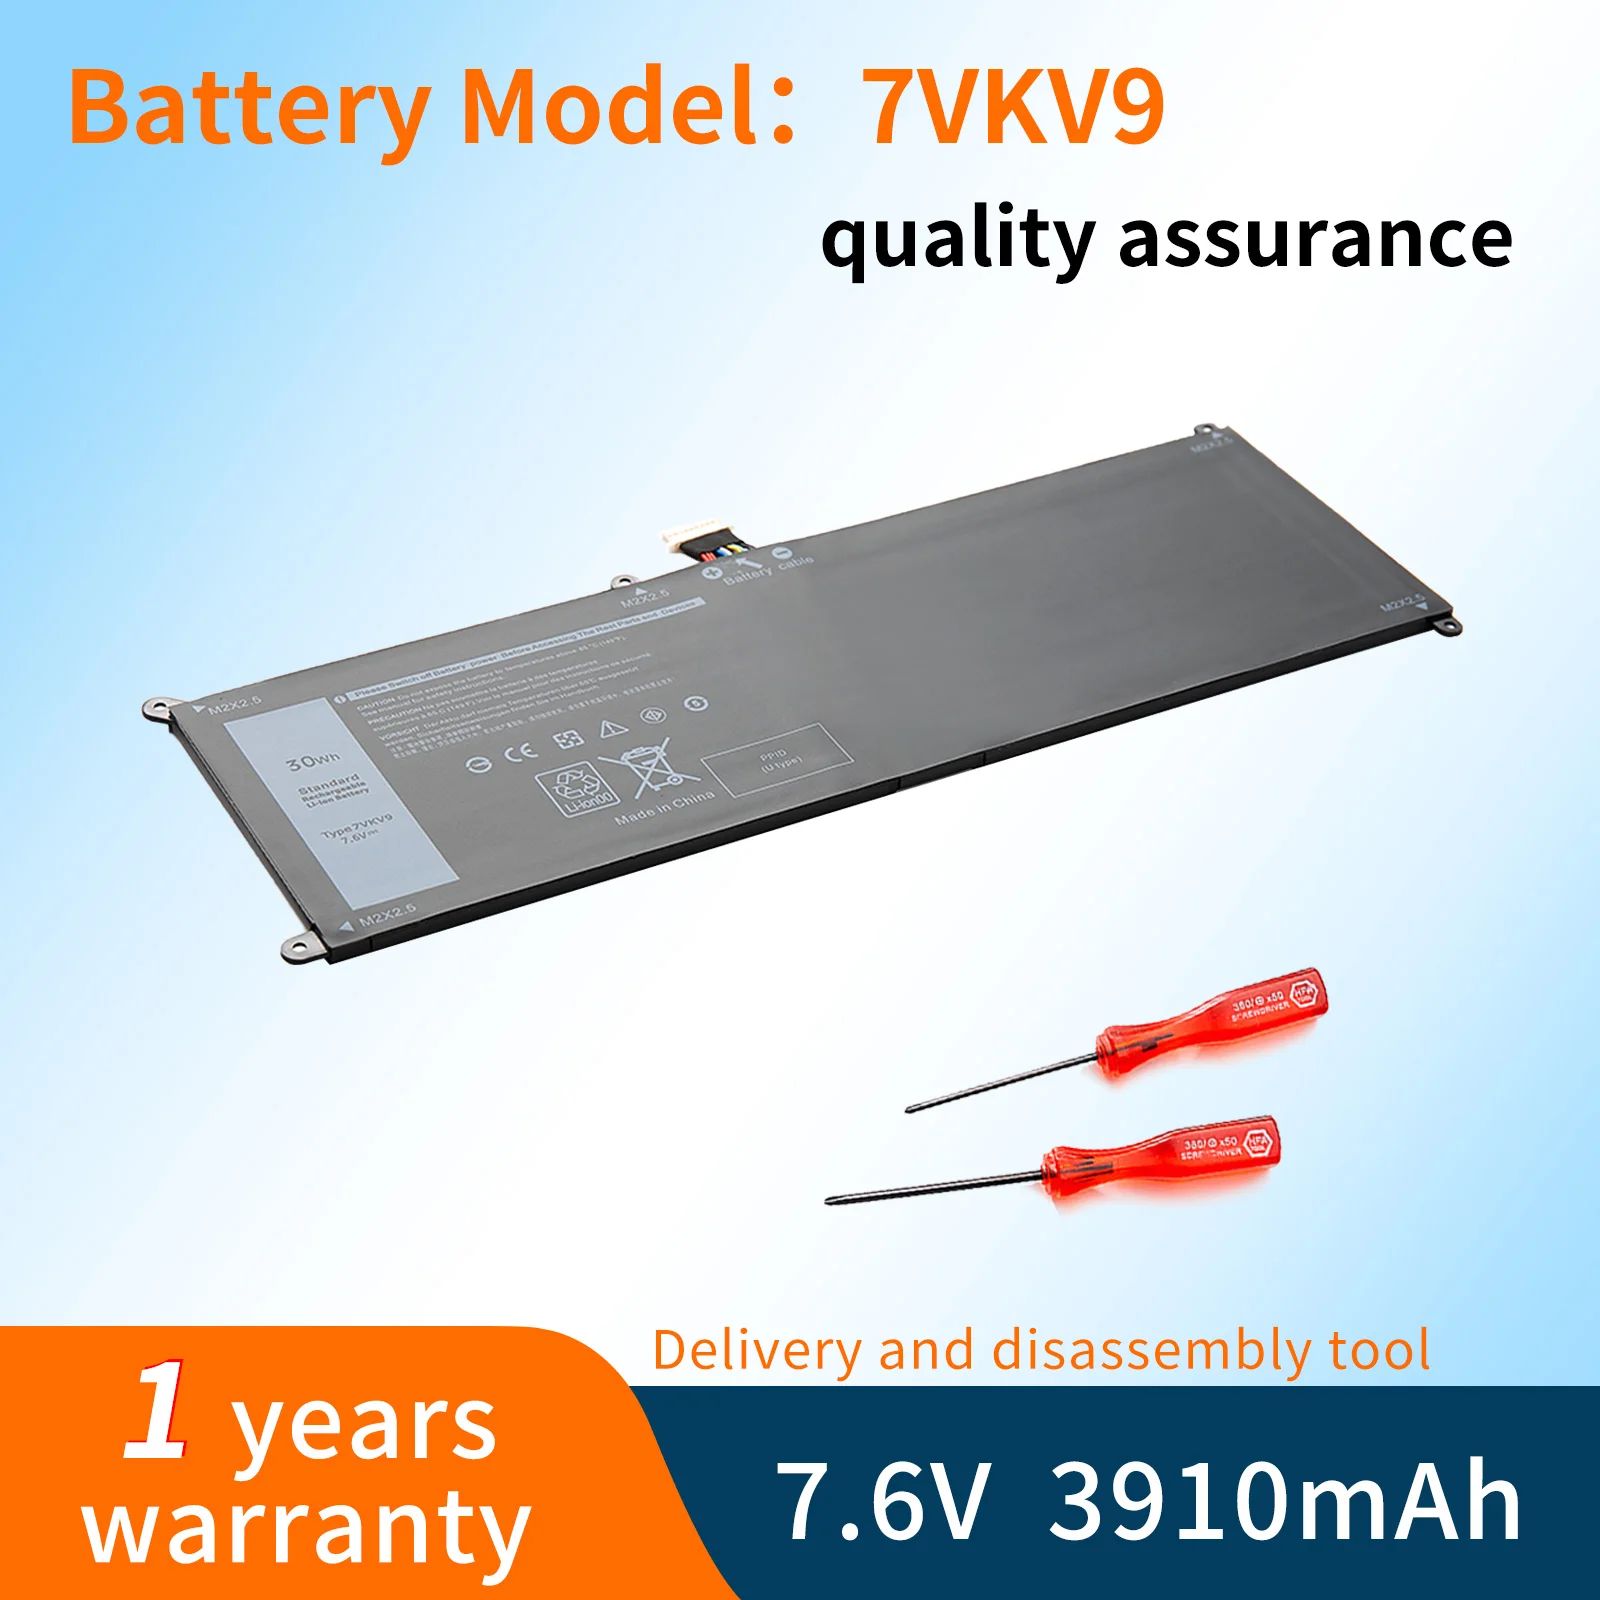 

BVBH 7VKV9 9TV5X Laptop Battery For DELL Latitude XPS 12 7000 7275 9250 Series Notebook 7VKV9 7.6V 30WH